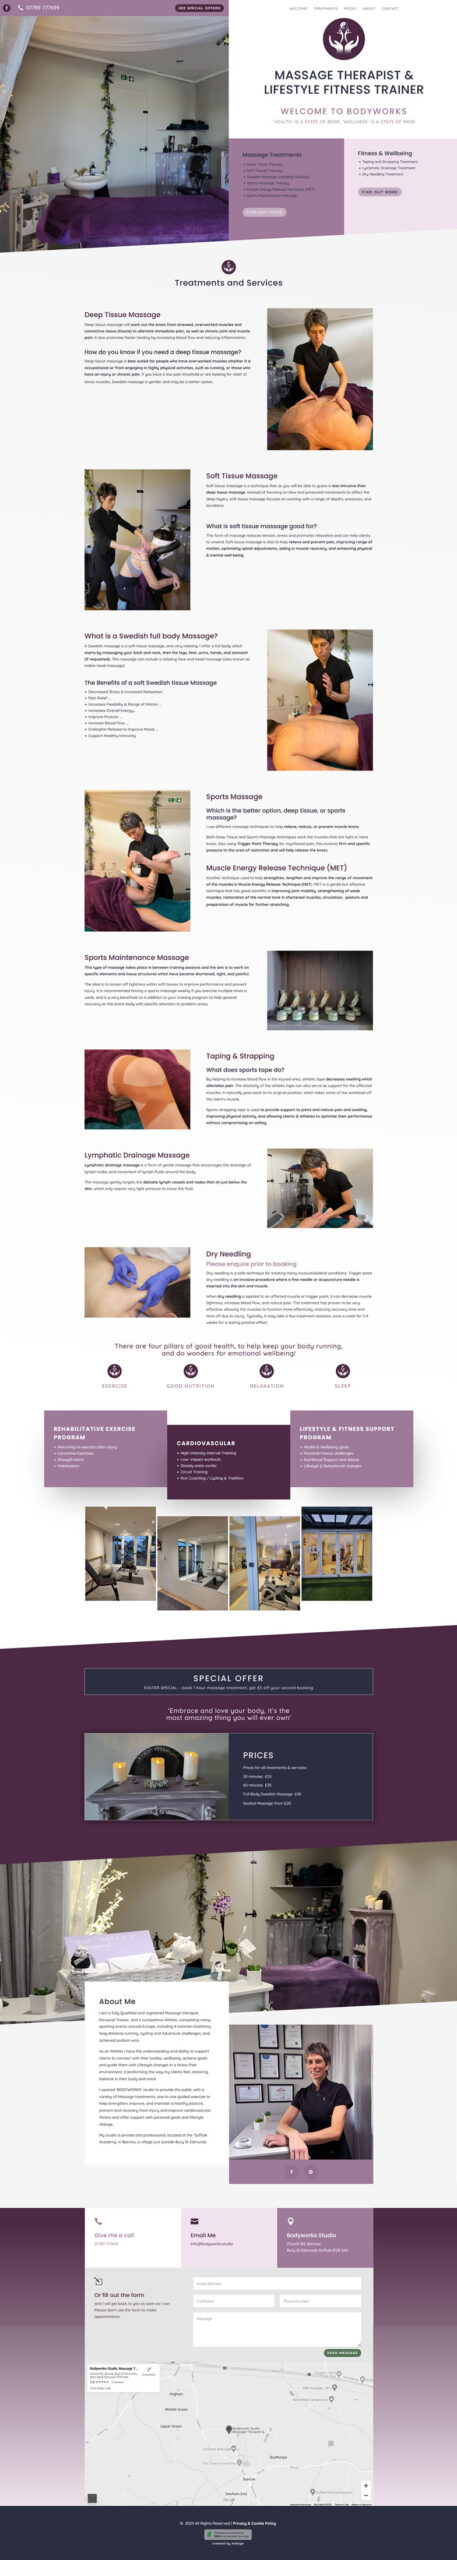 Bodyworks website by Mdsign